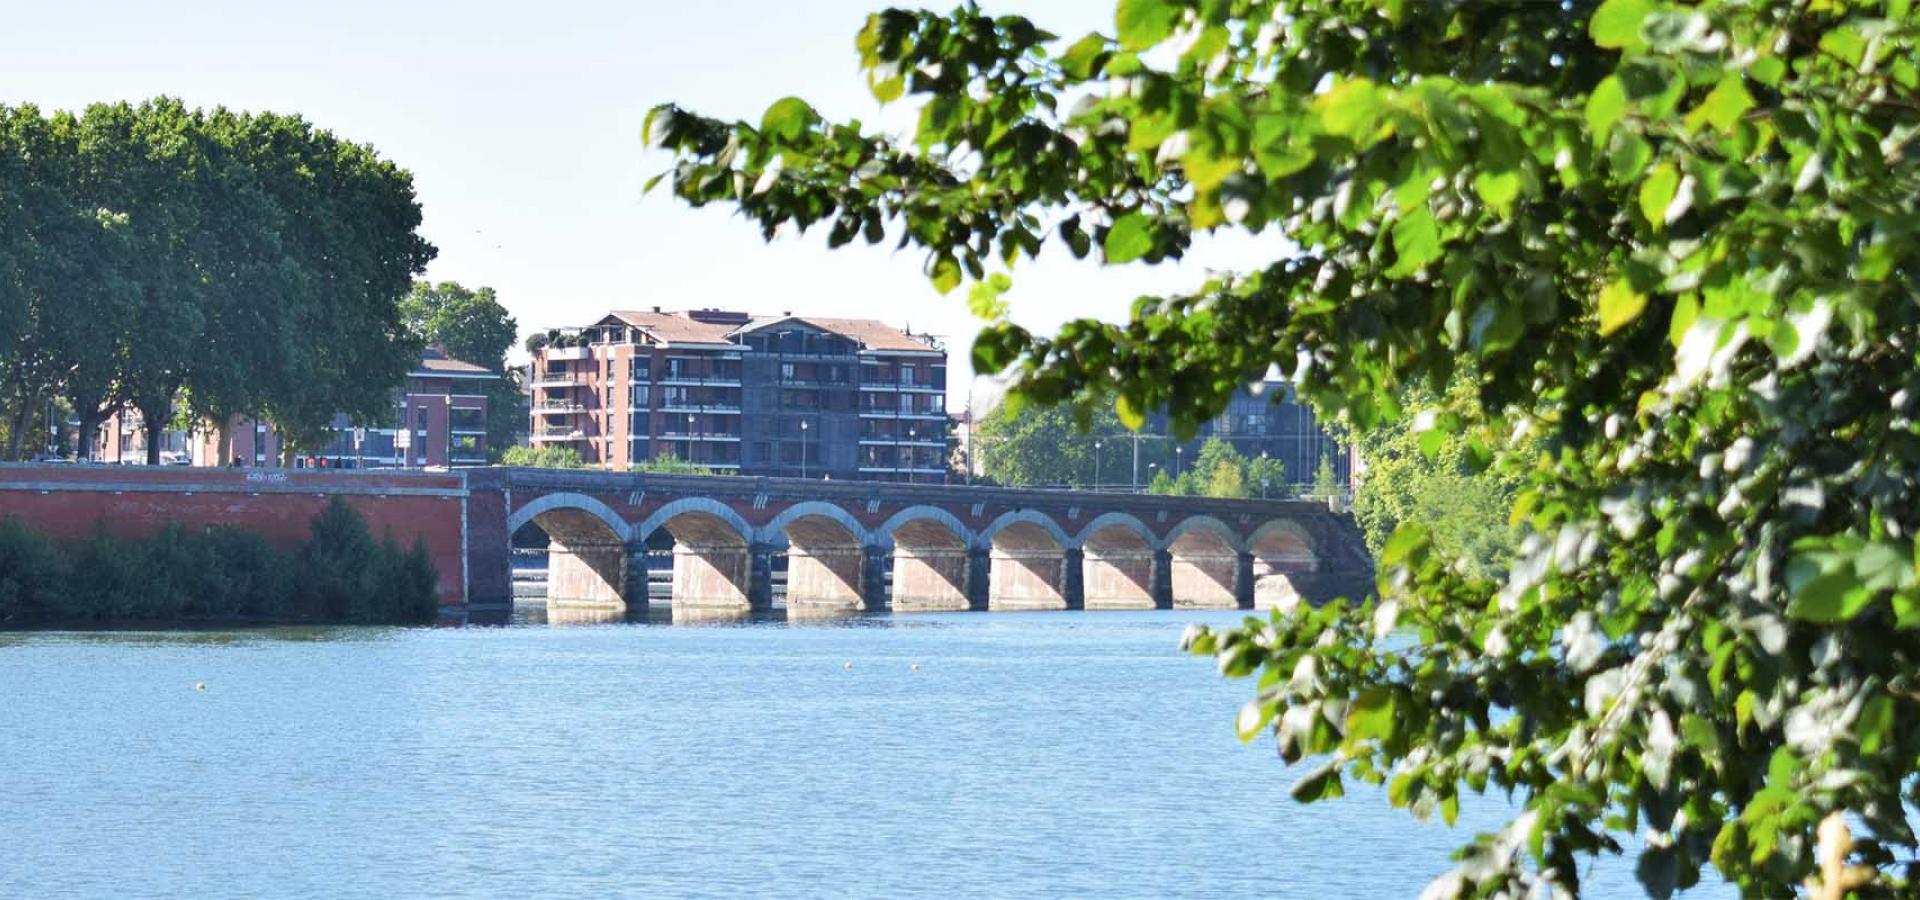 Décor tournage : Pont du Halage-de-Tounis à Toulouse en bord de Garonne